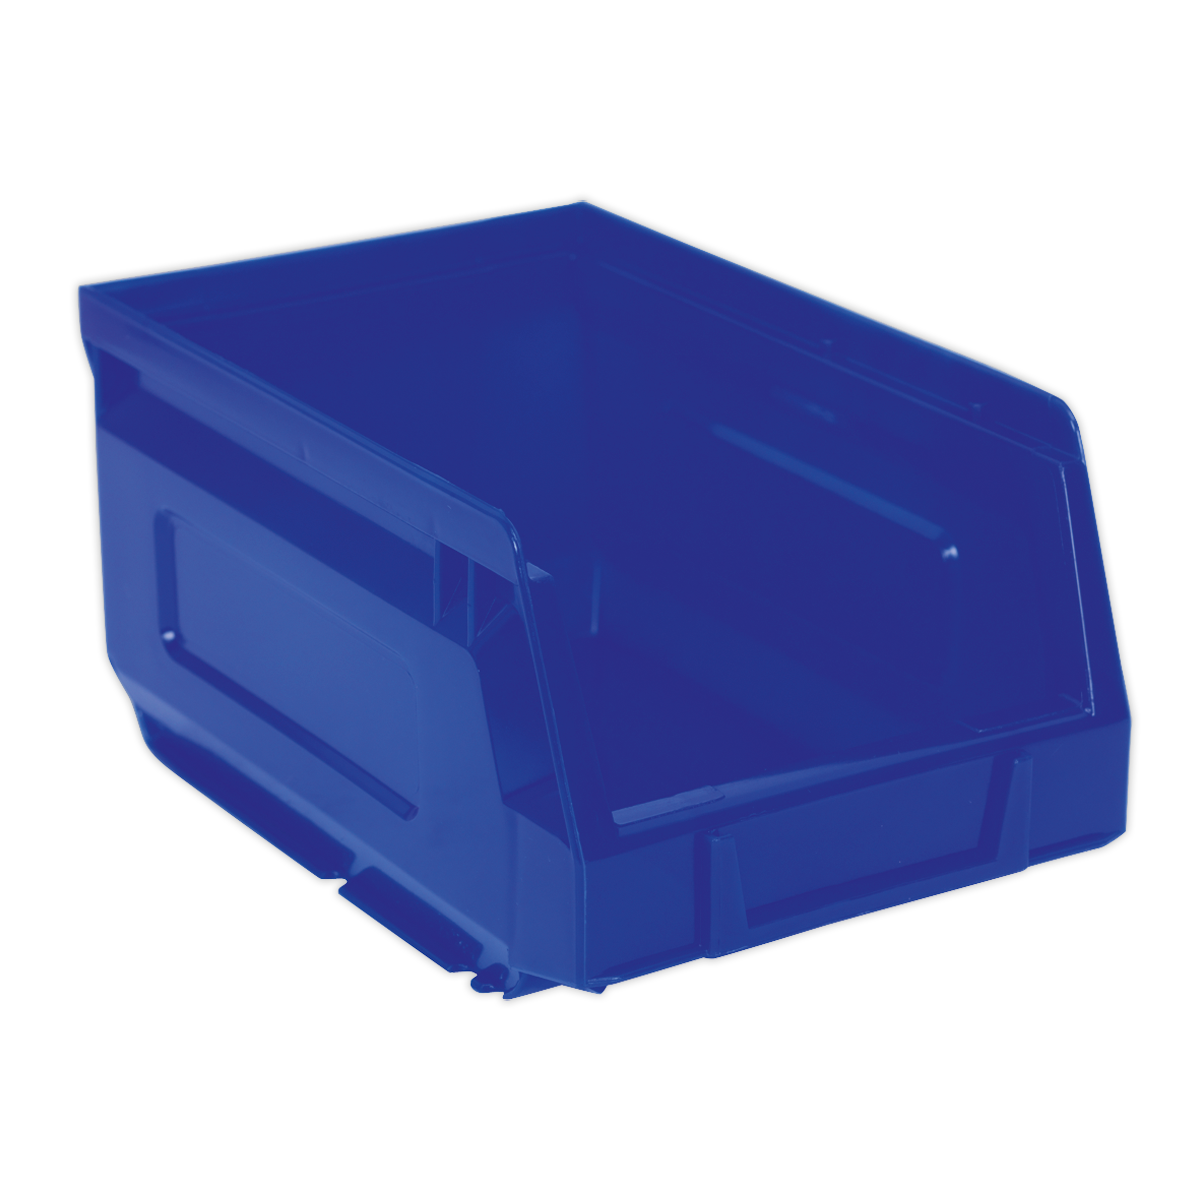 Plastic Storage Bin 105 x 165 x 85mm - Blue Pack of 24